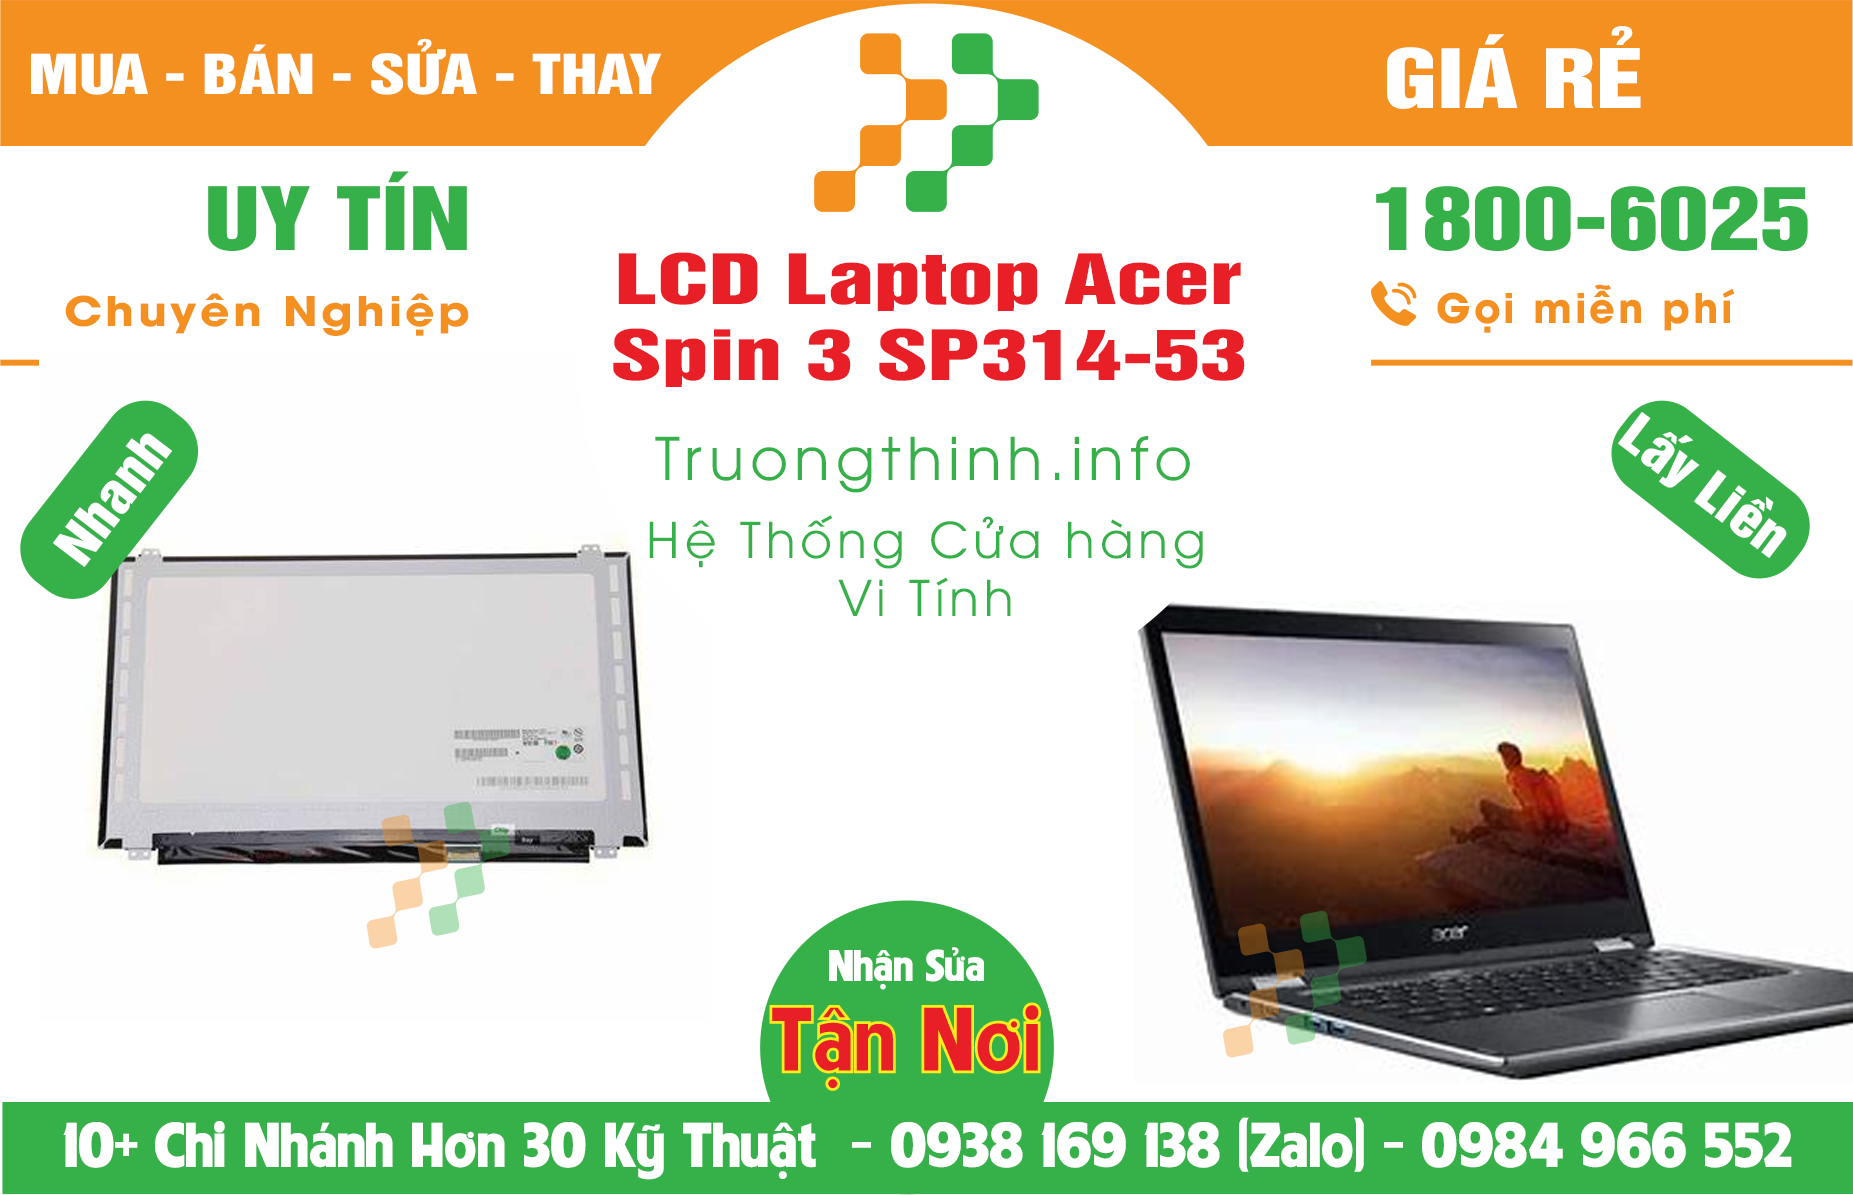 Mua Bán Màn Hình Laptop Acer Spin 3 SP314-53 Giá Rẻ | Máy Tính Trường Thịnh Giá Rẻ